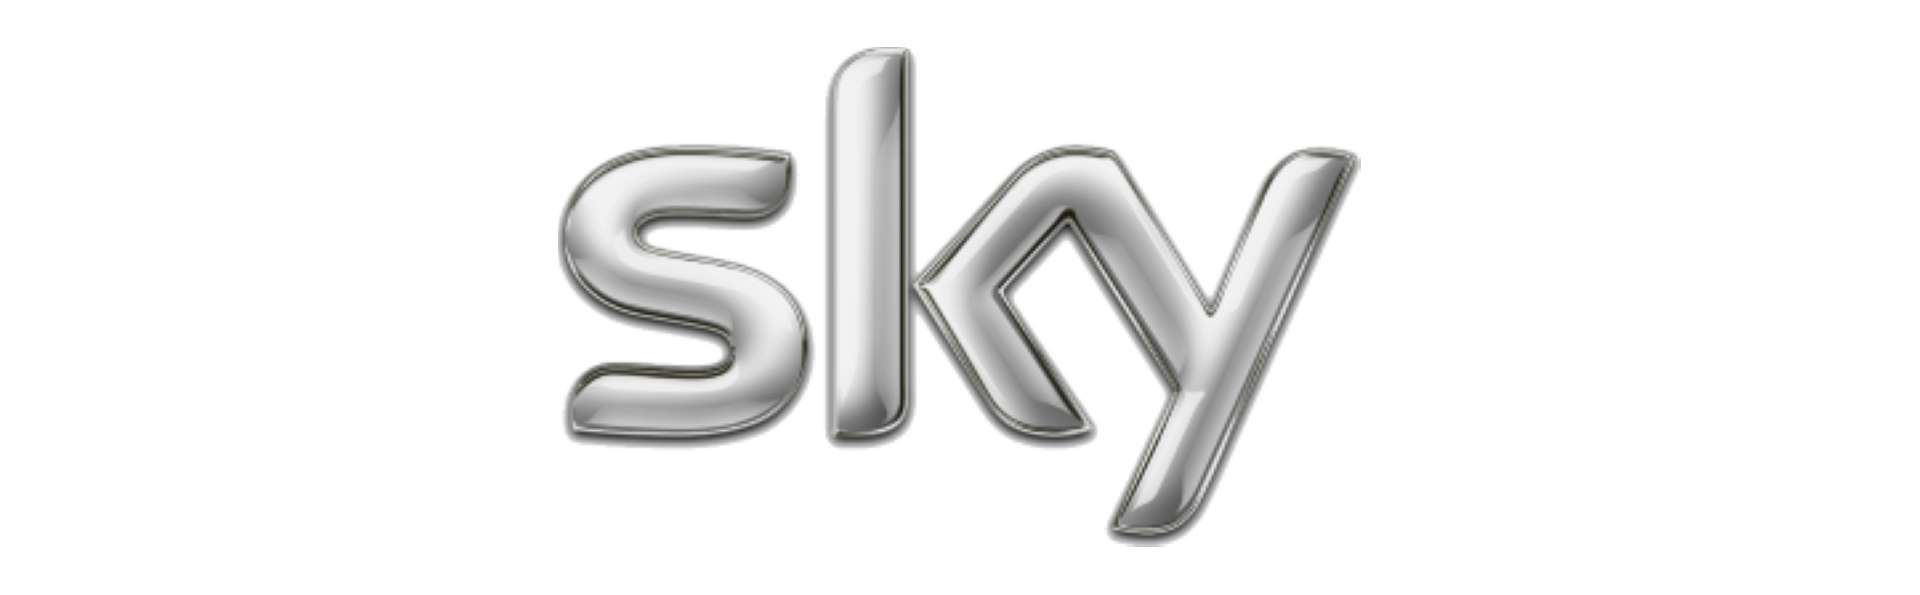 Sky TV Installation in Carlisle, Cumbria